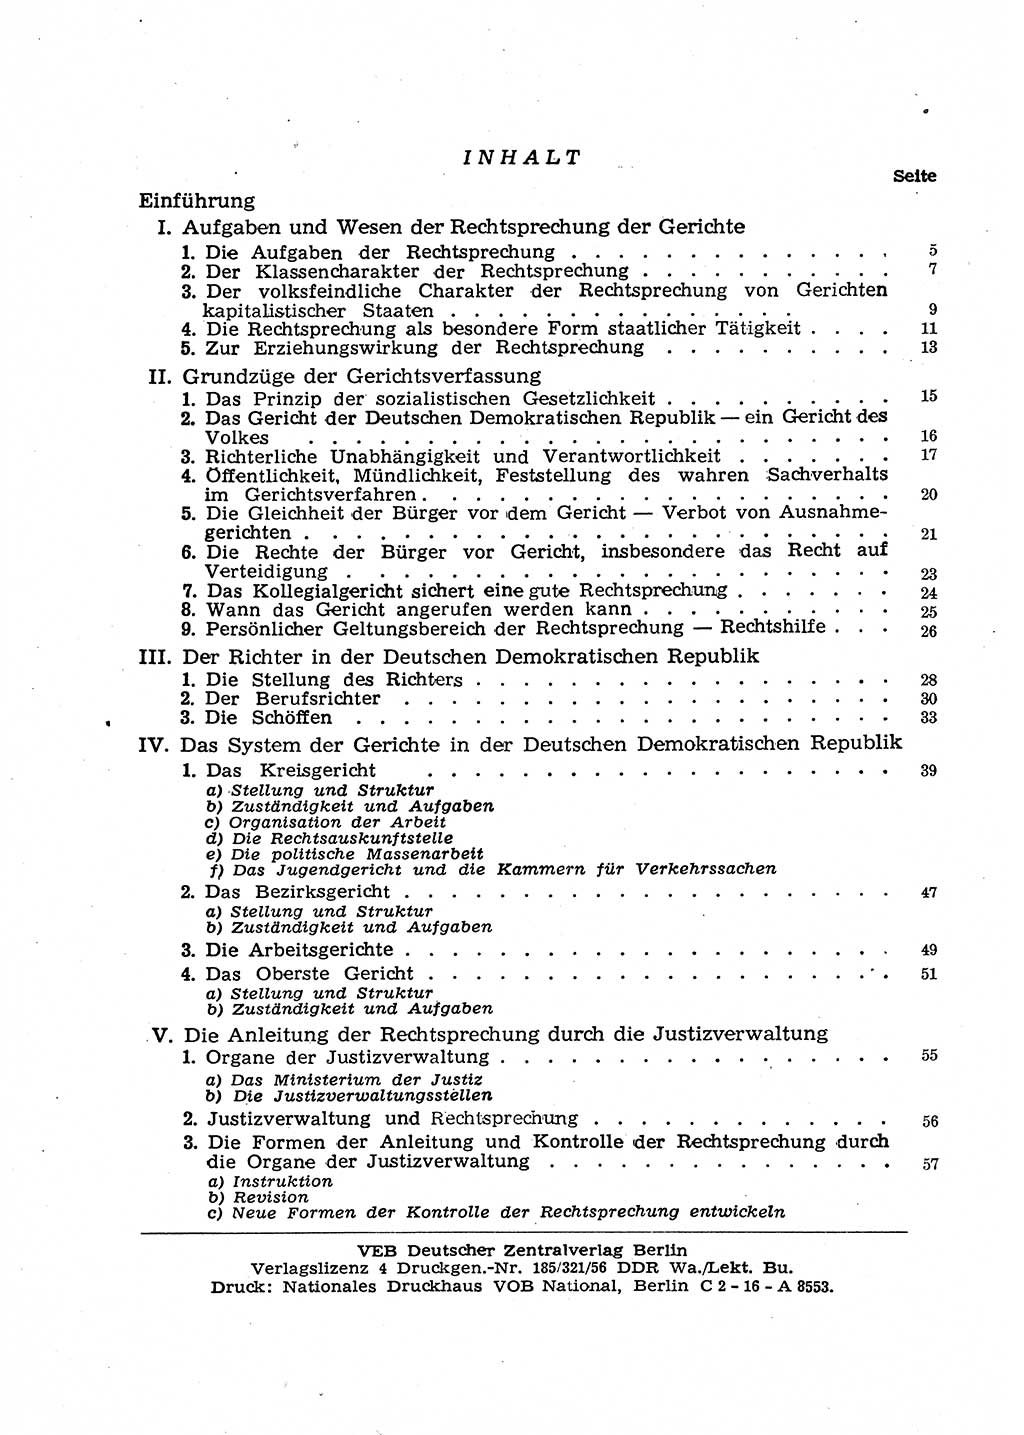 Gericht und Rechtsprechung in der Deutschen Demokratischen Republik (DDR) 1956, Seite 2 (Ger. Rechtspr. DDR 1956, S. 2)